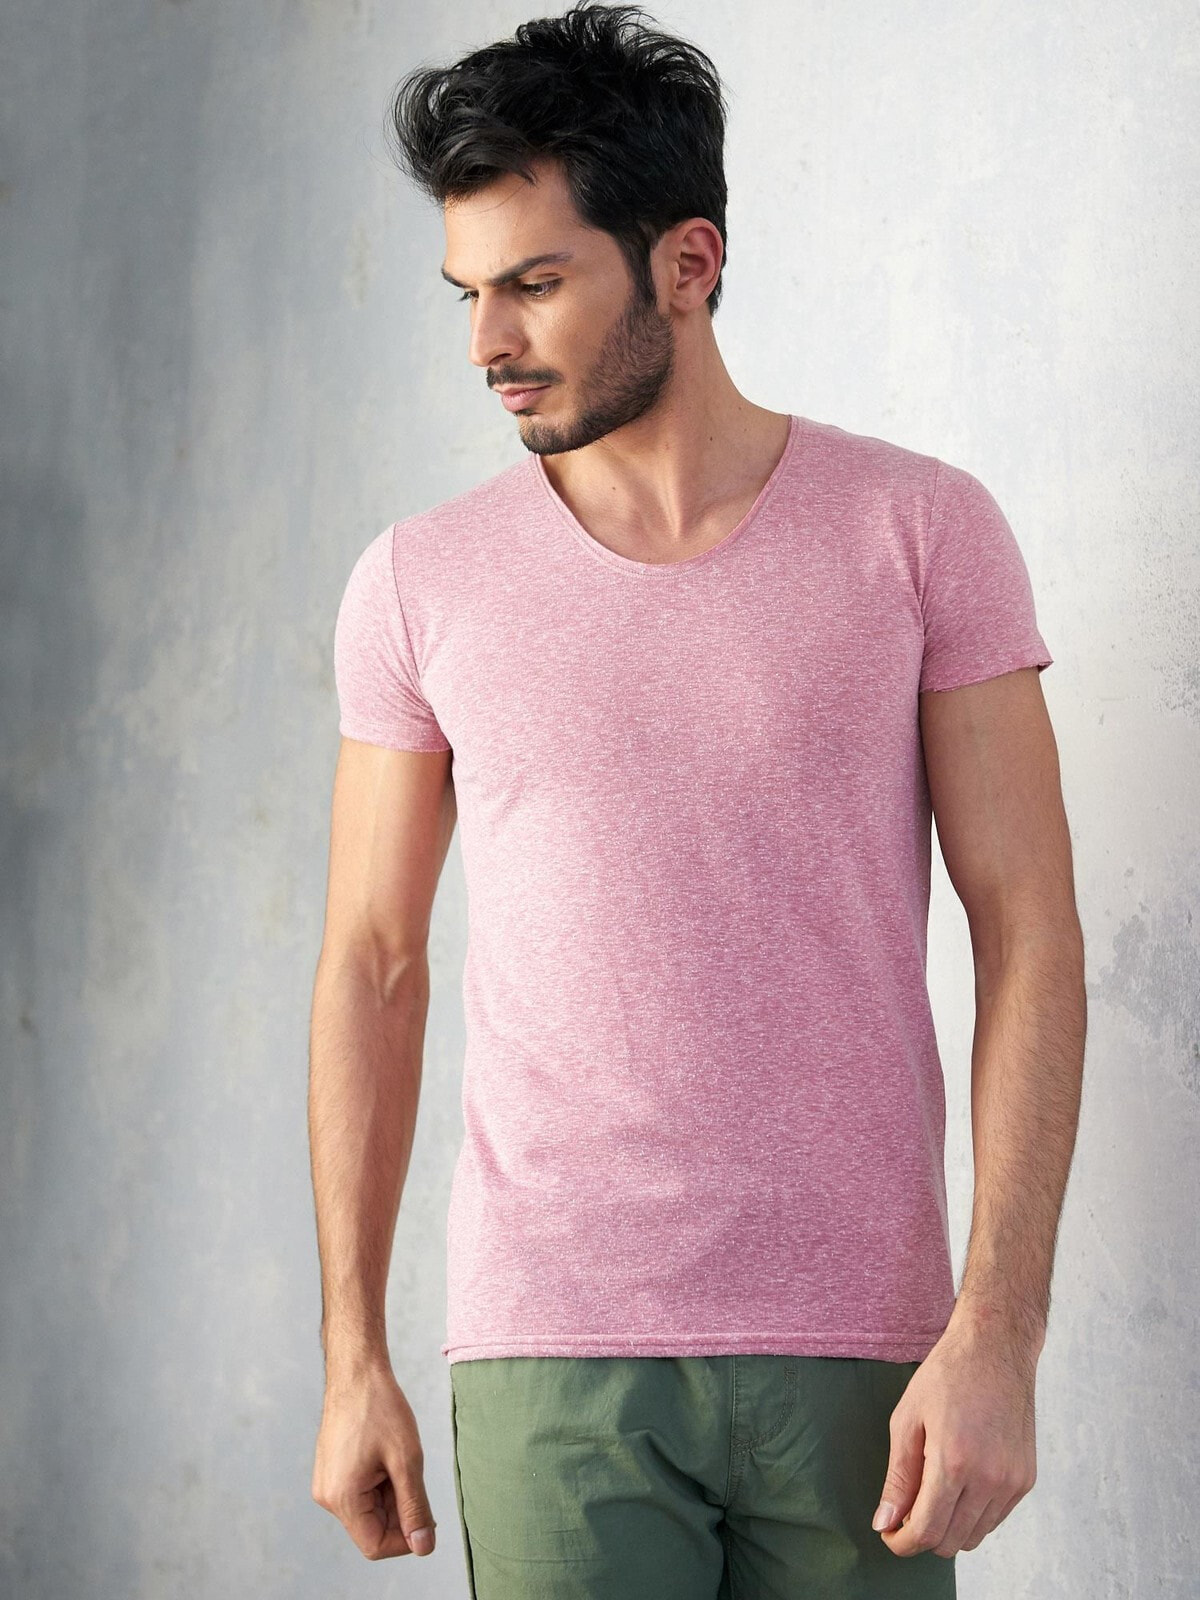 Мужская футболка повседневная розовая однотонная Factory Price-RT-TS-TH1056.22